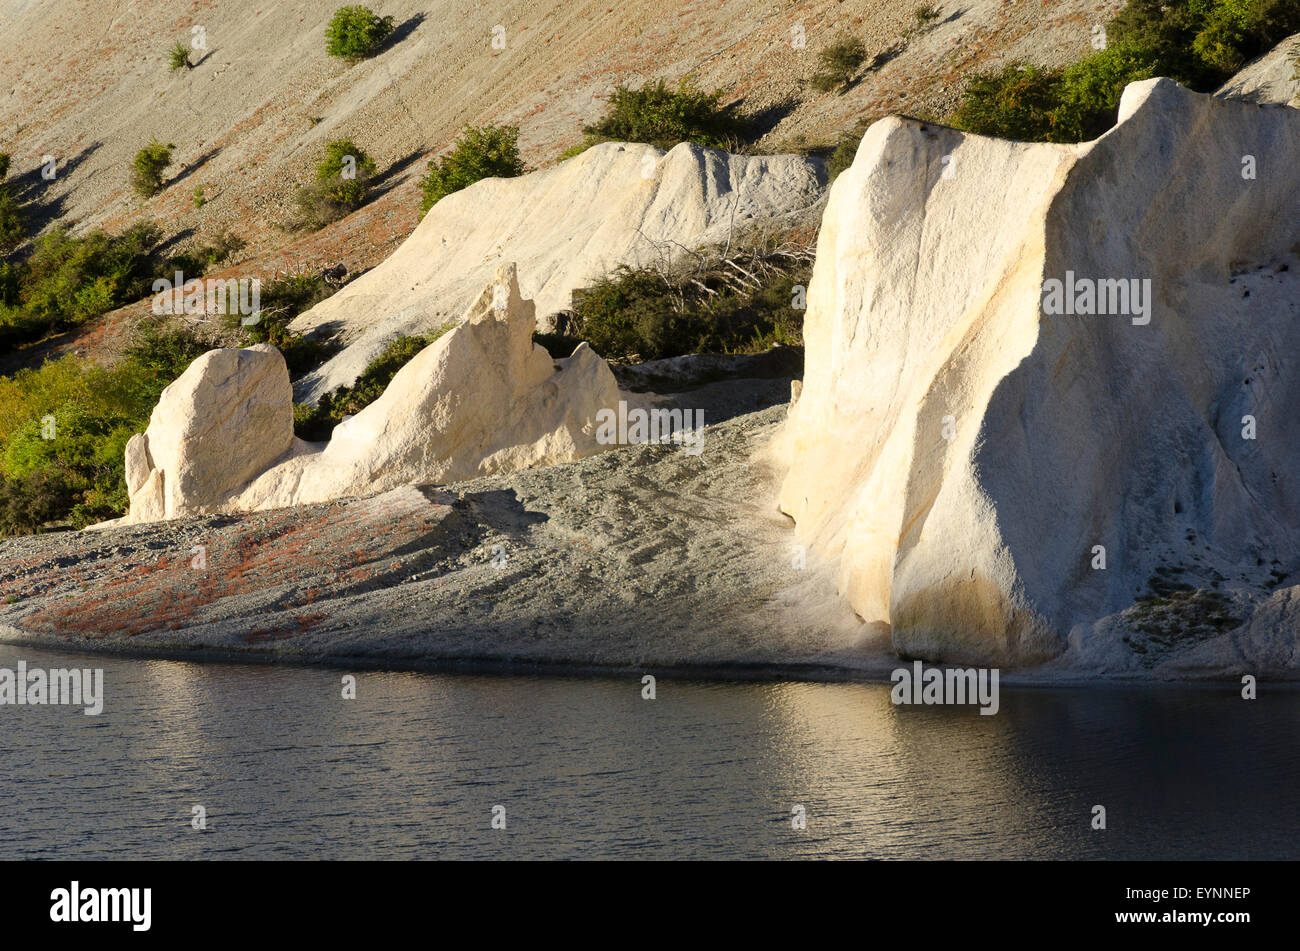 White rock formations, Lac Bleu, Saint Bathans, Central Otago, île du Sud, Nouvelle-Zélande Banque D'Images